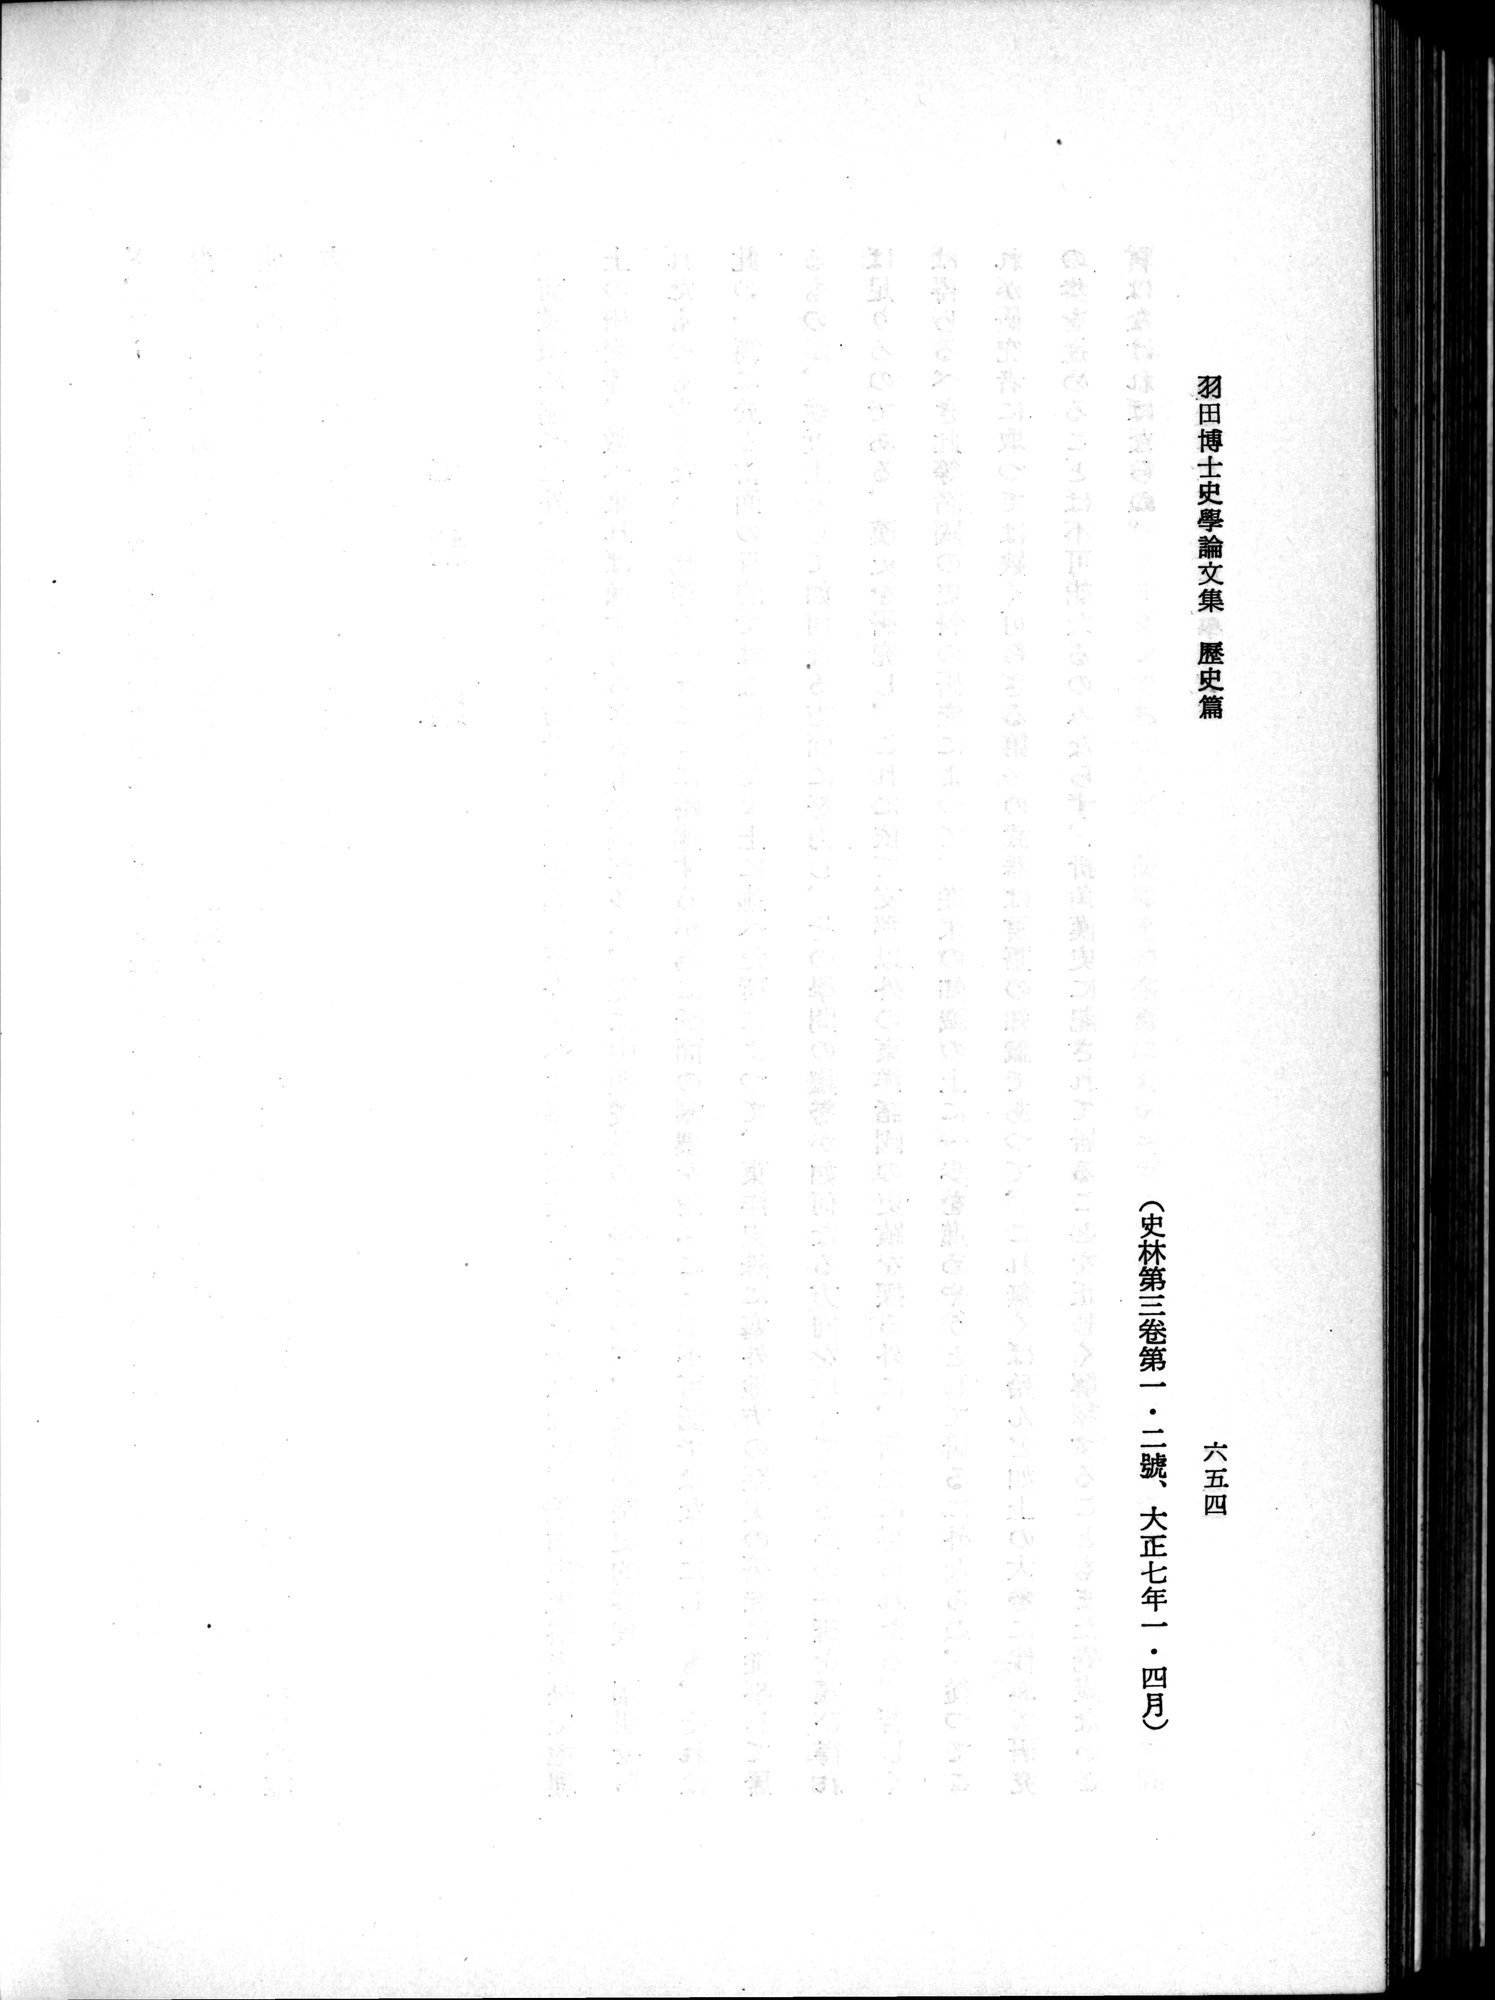 羽田博士史学論文集 : vol.1 / 692 ページ（白黒高解像度画像）